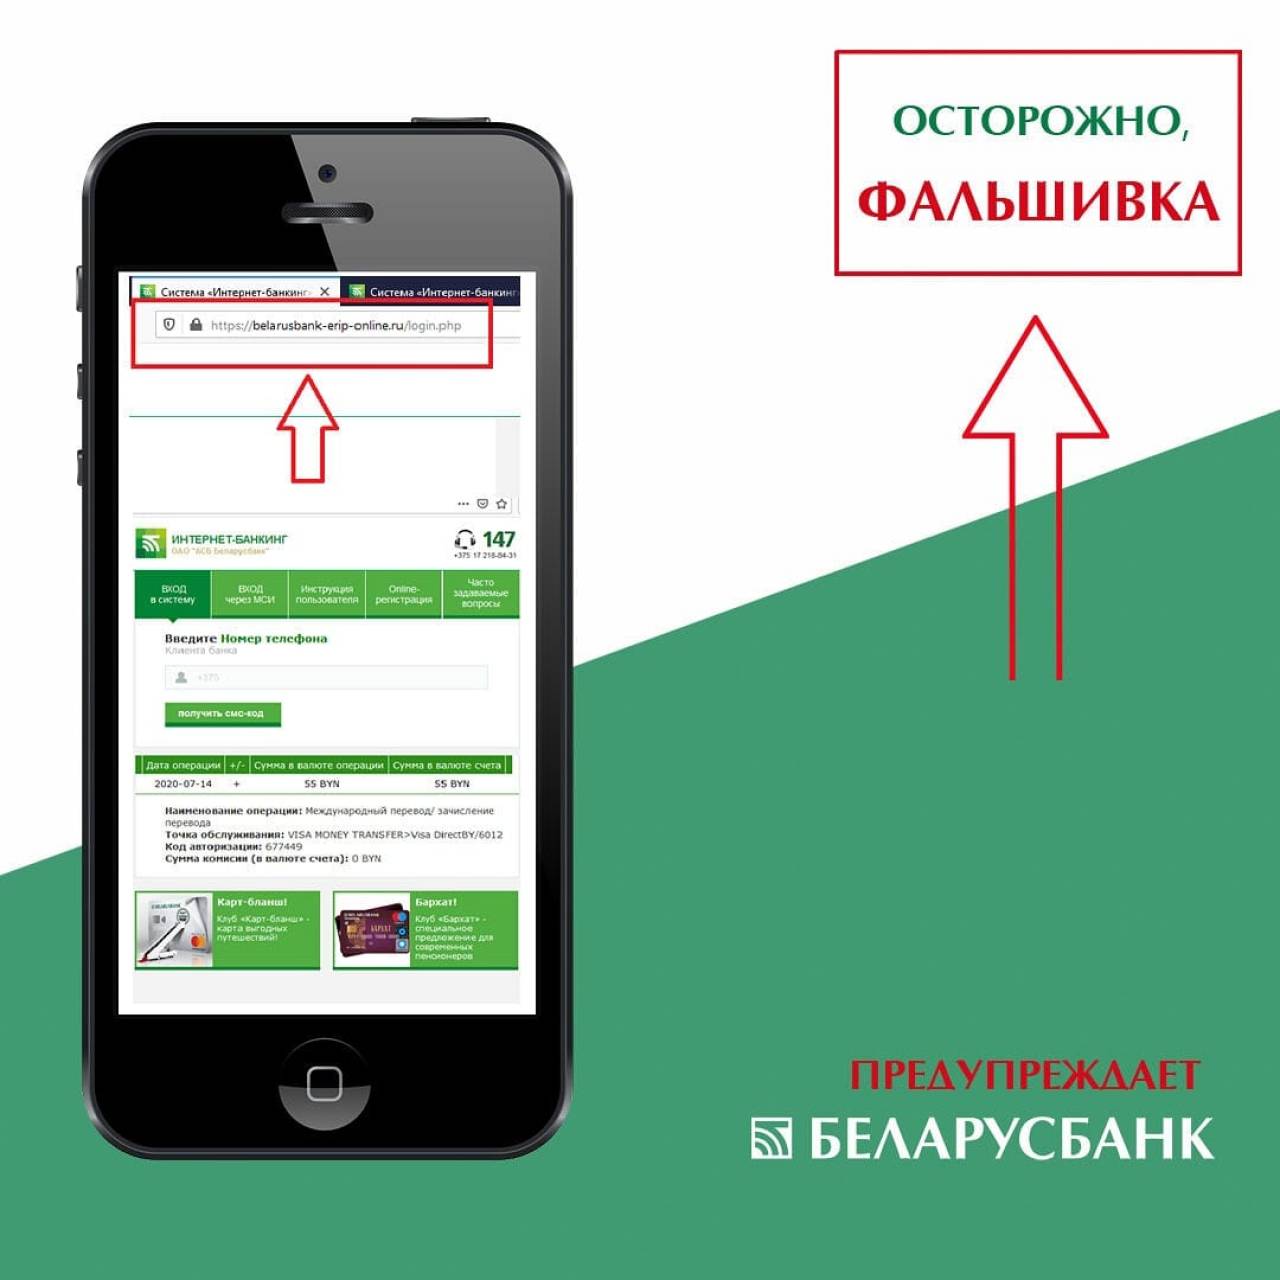 В поисковиках слишком много ссылок от мошенников, которые притворяются «Беларусбанком». На что нужно обращать внимание?